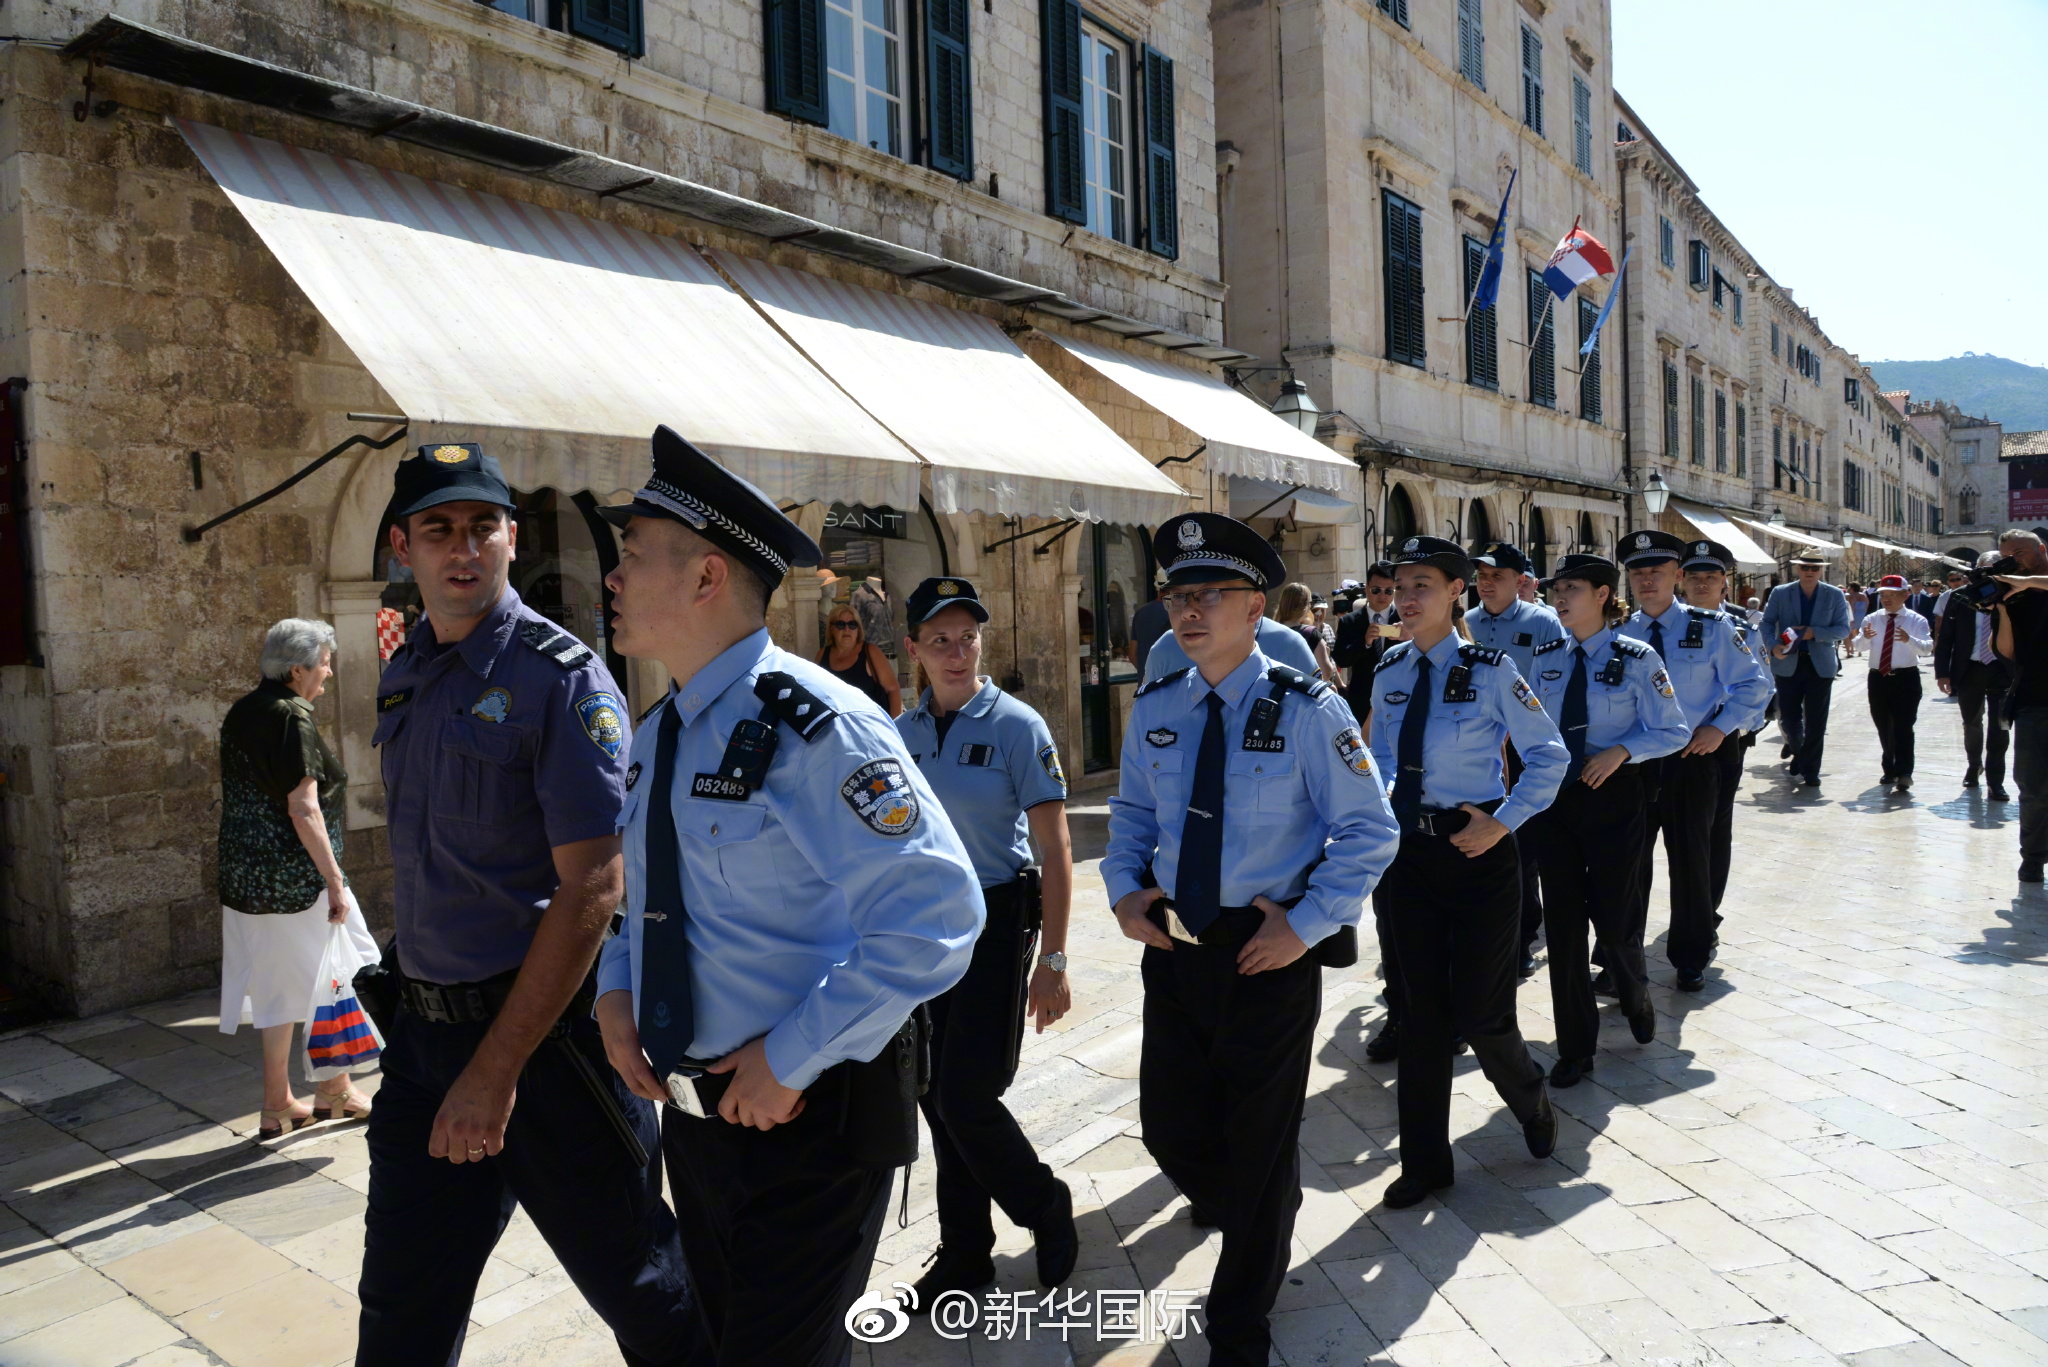 중국 경찰이 크로아티아 경찰과 합동으로 관광지를 순찰하고 있다. 출처: 바이두